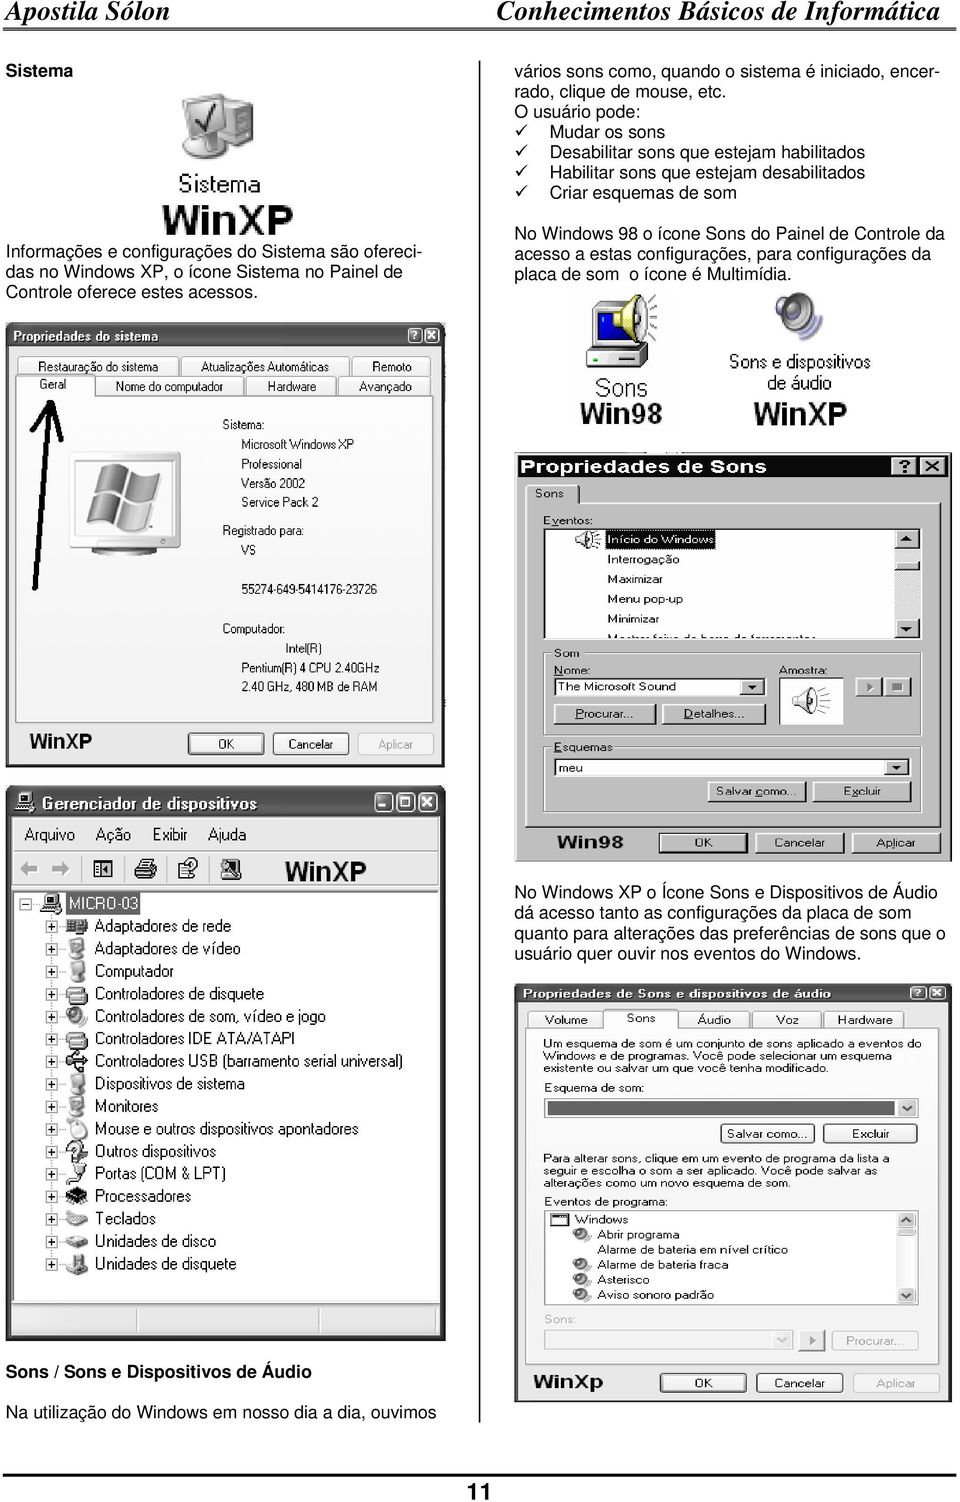 O usuário pode: Mudar os sons Desabilitar sons que estejam habilitados Habilitar sons que estejam desabilitados Criar esquemas de som No Windows 98 o ícone Sons do Painel de Controle da acesso a